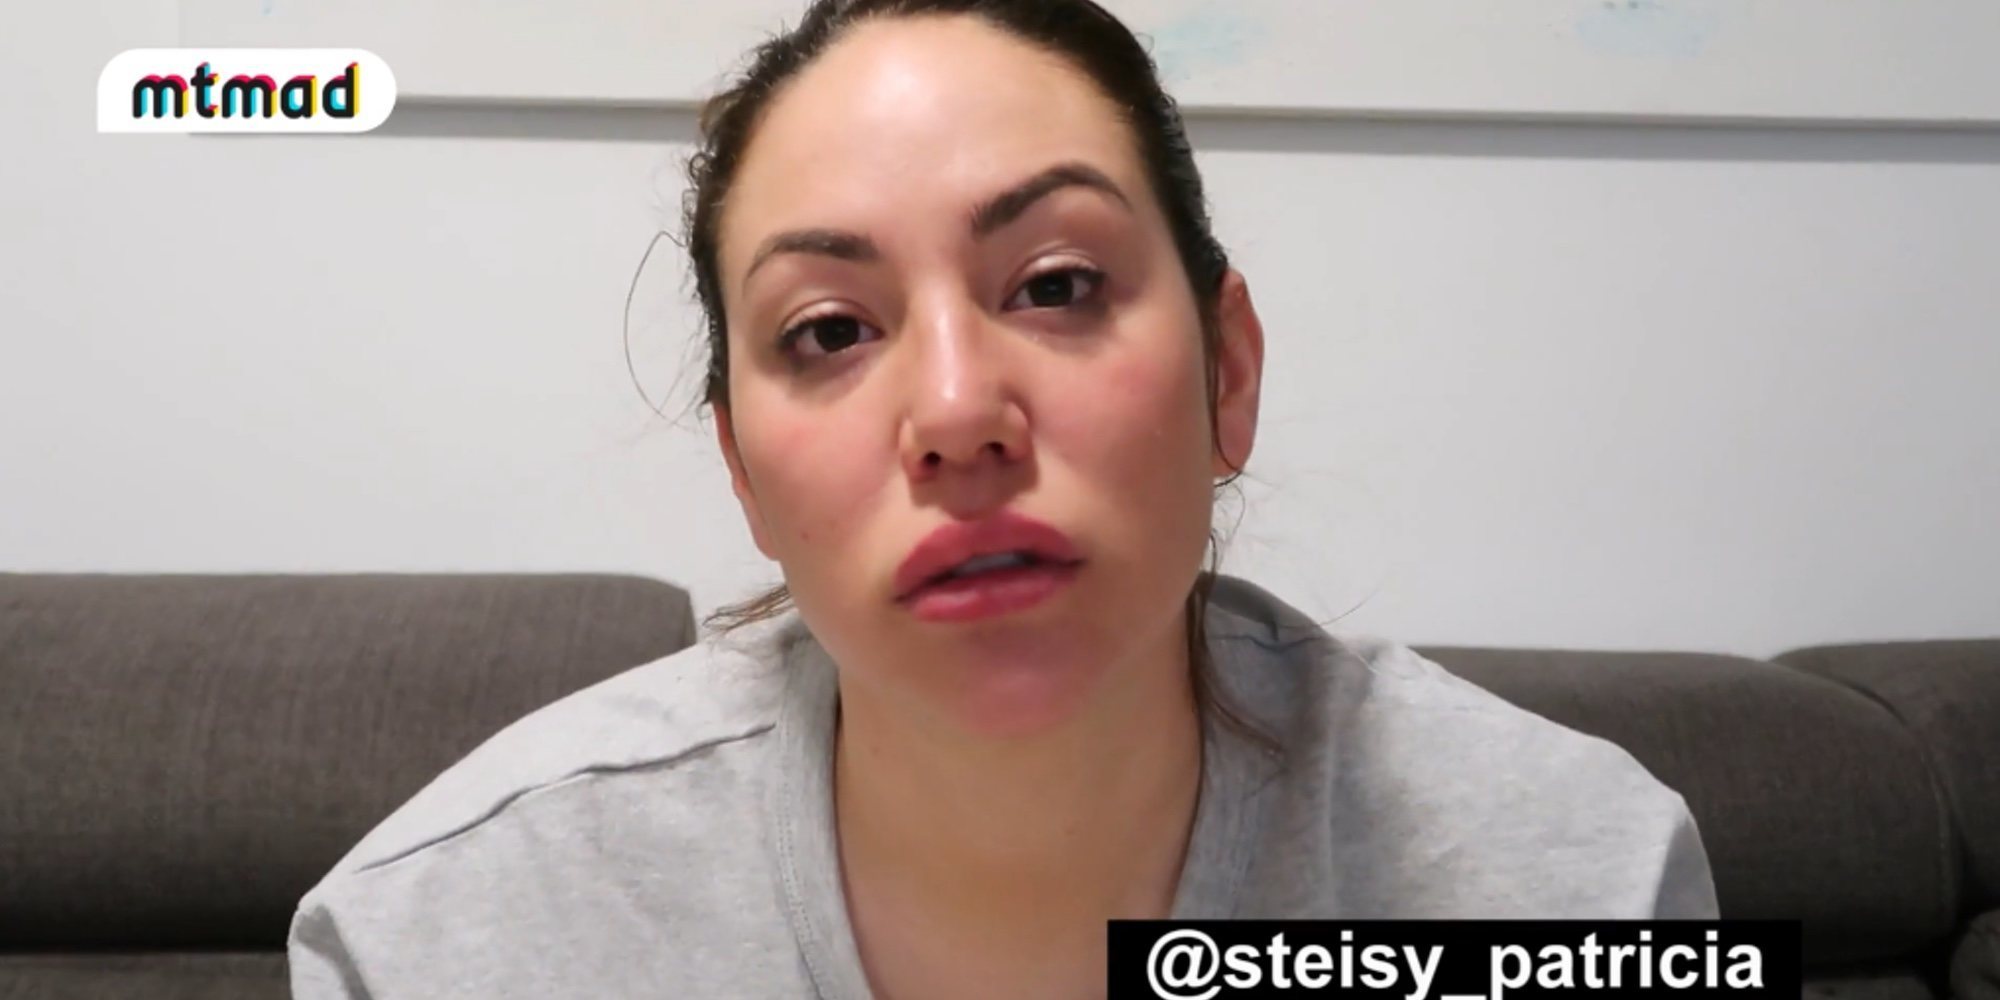 Steisy: "He sido víctima de un acosador que ha conseguido que me asuste y no pueda estar sola en casa"